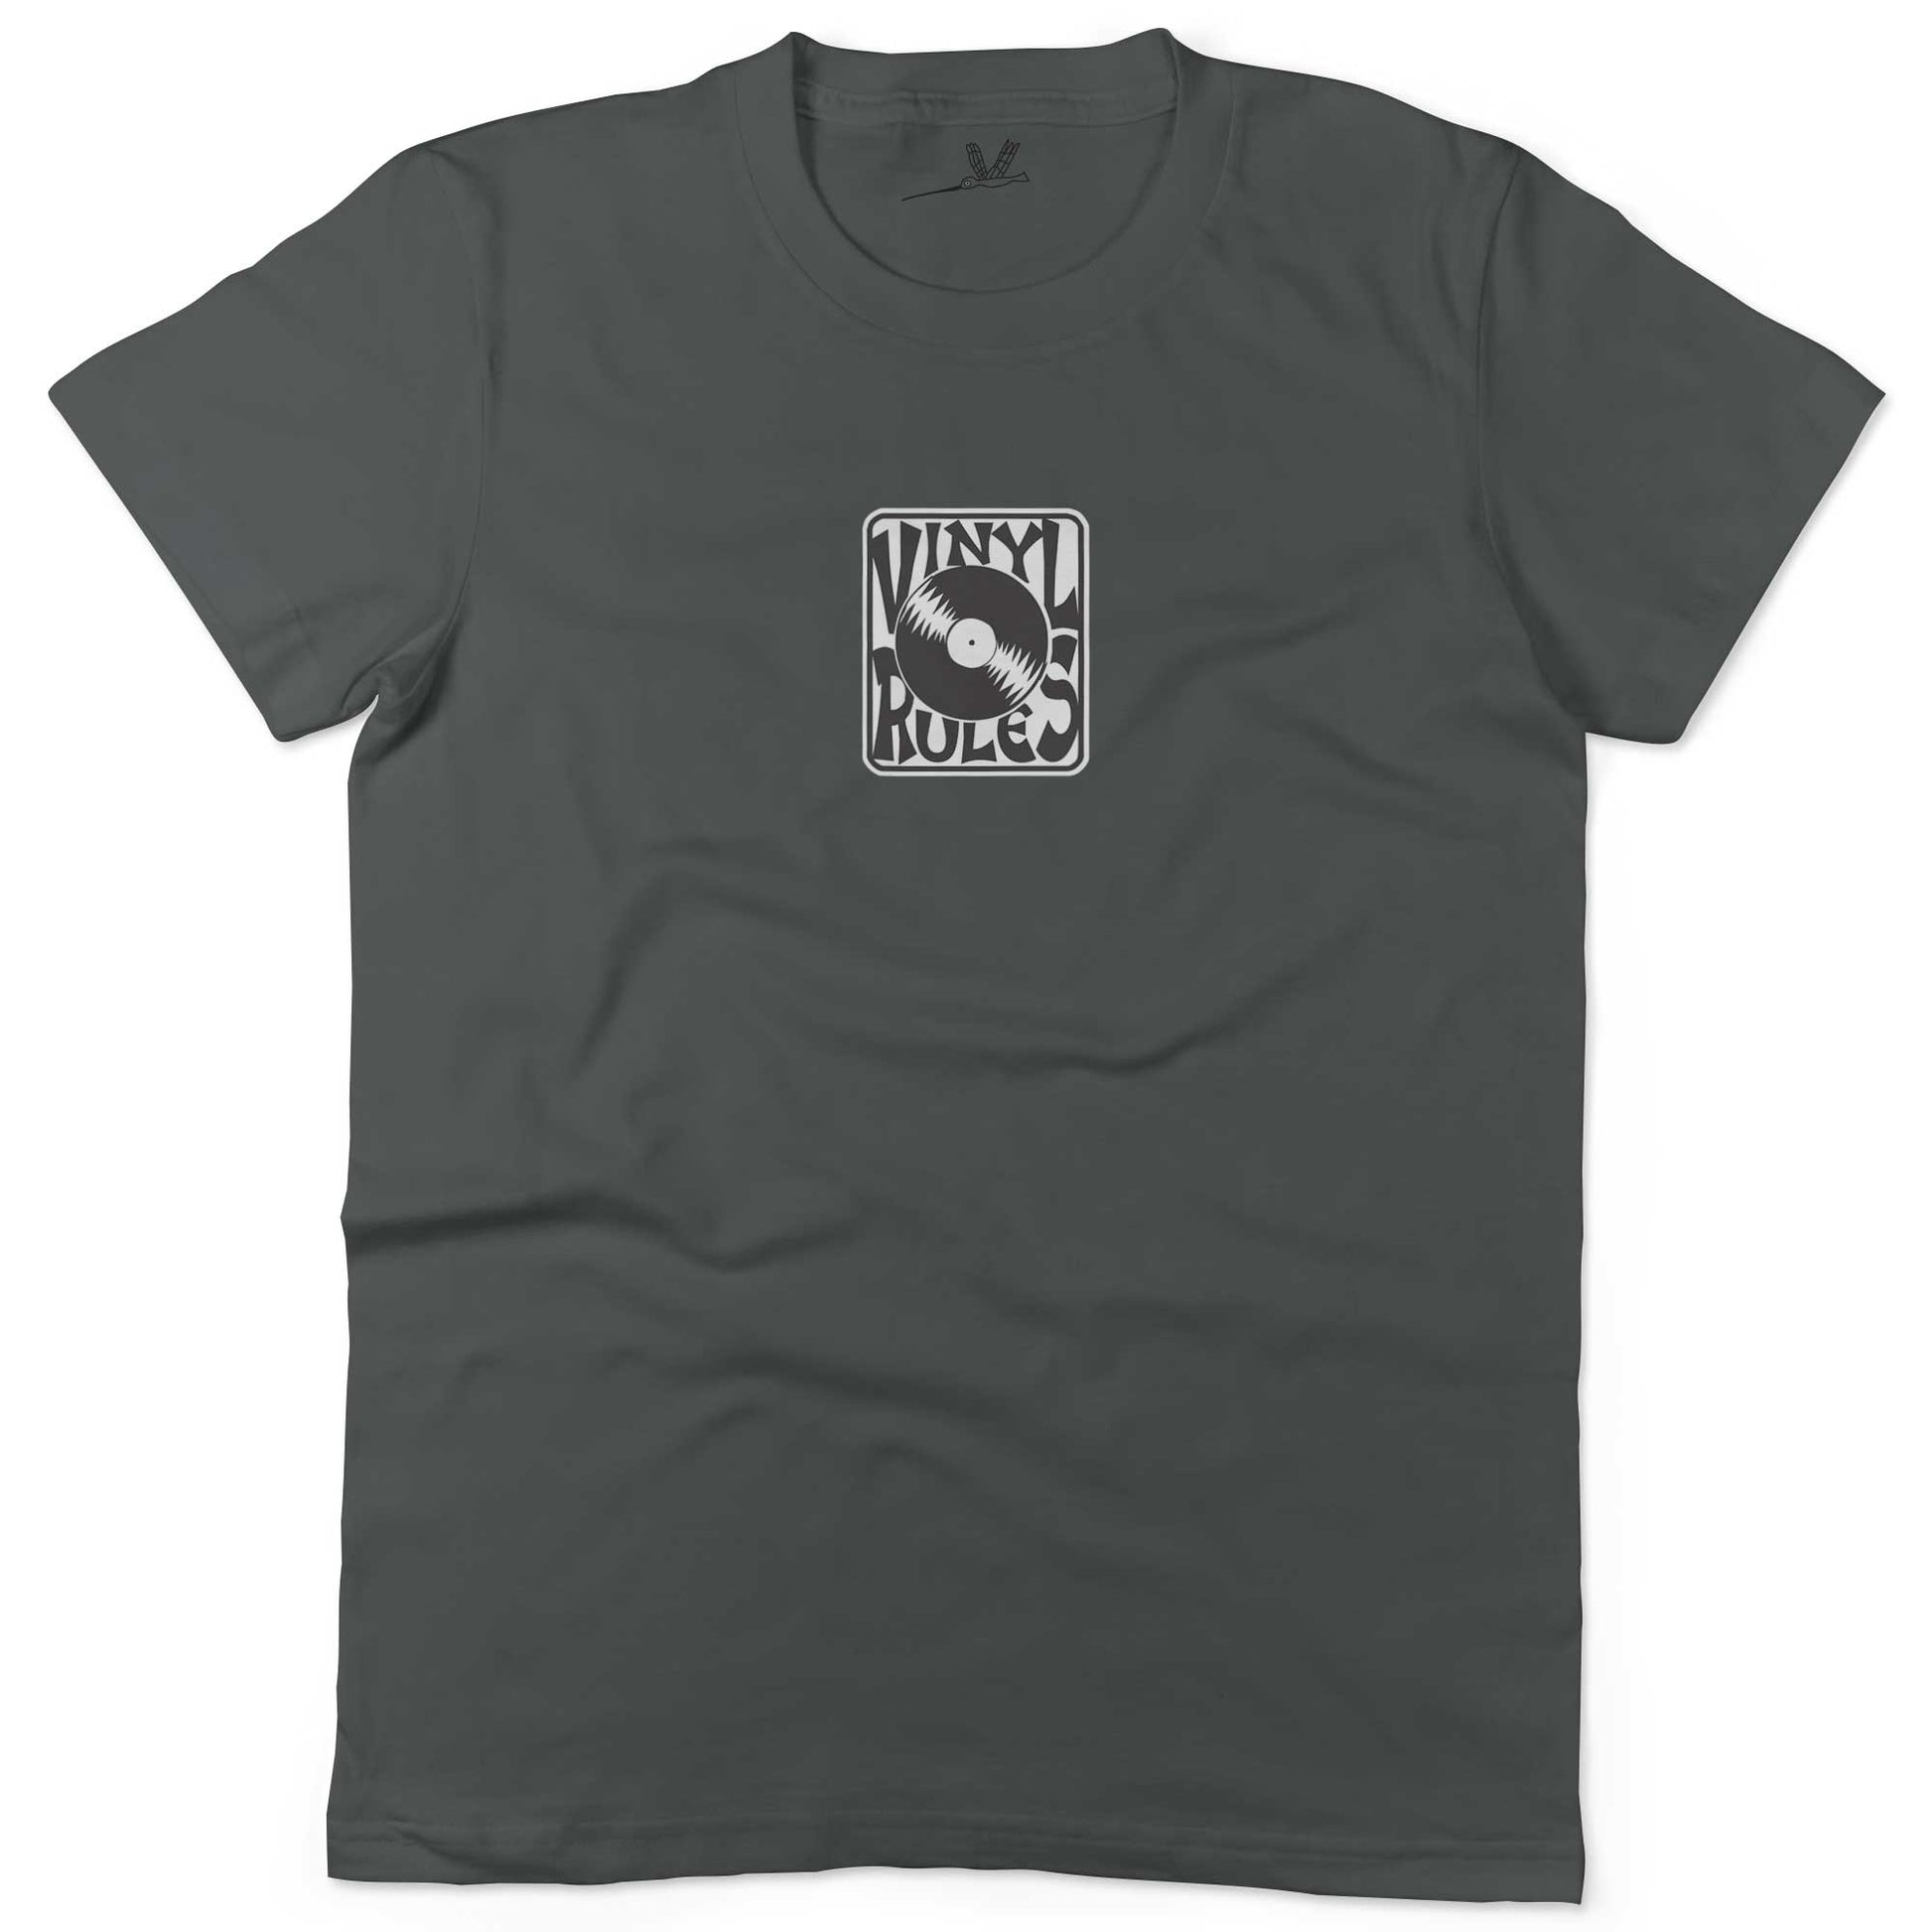 Vinyl Rules Unisex Or Women's Cotton T-shirt-Asphalt-Woman